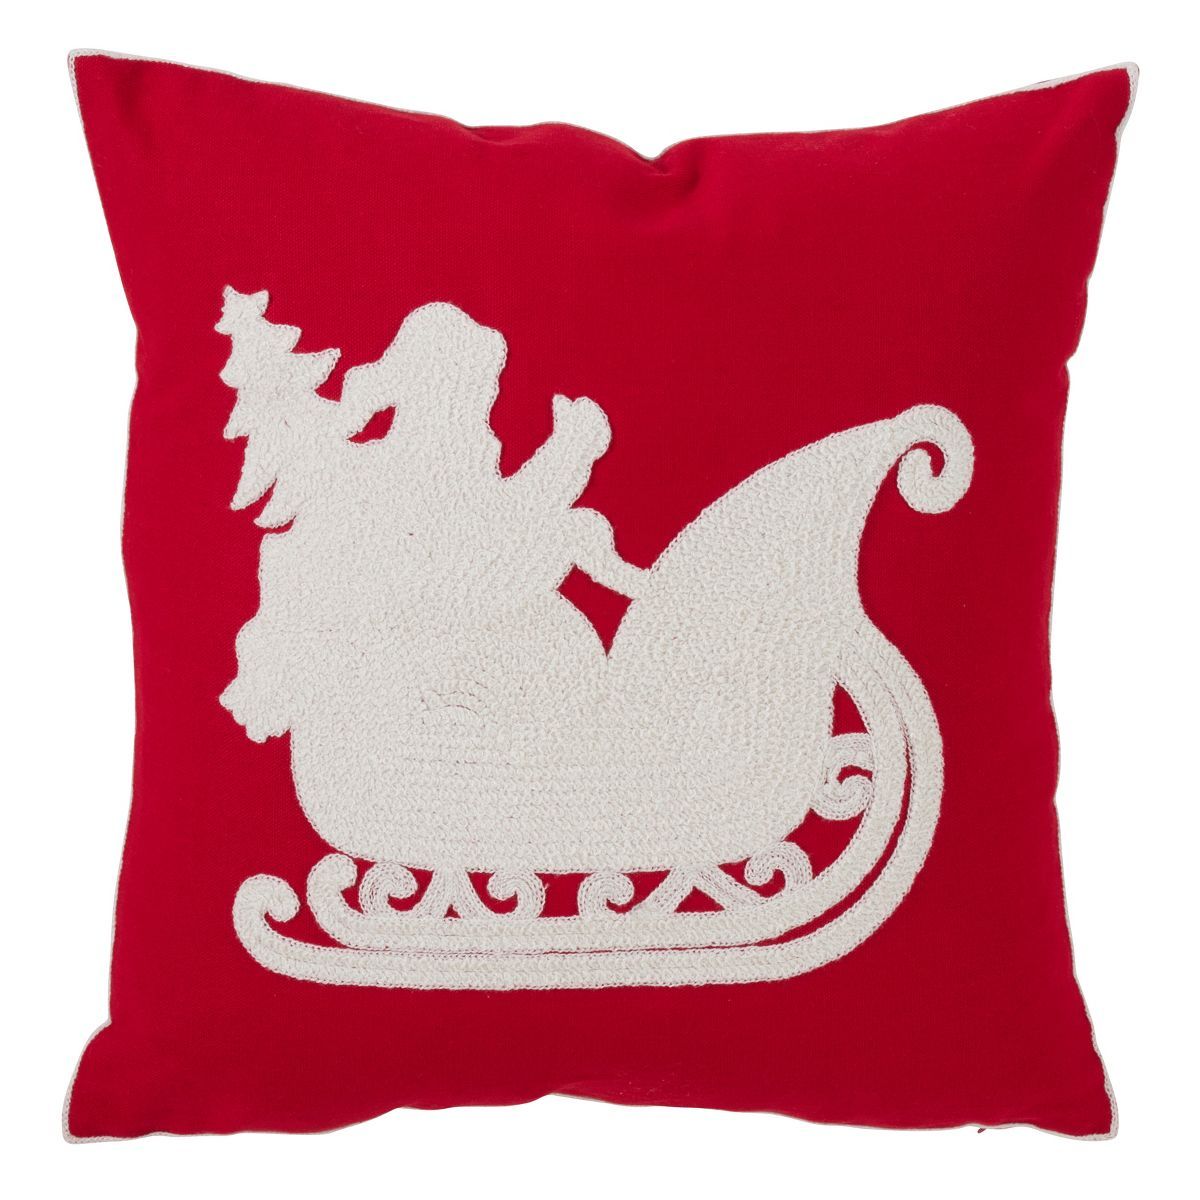 Santa's Sleigh Design Cotton Blend Square Throw Pillow Red - Saro Lifestyle | Target